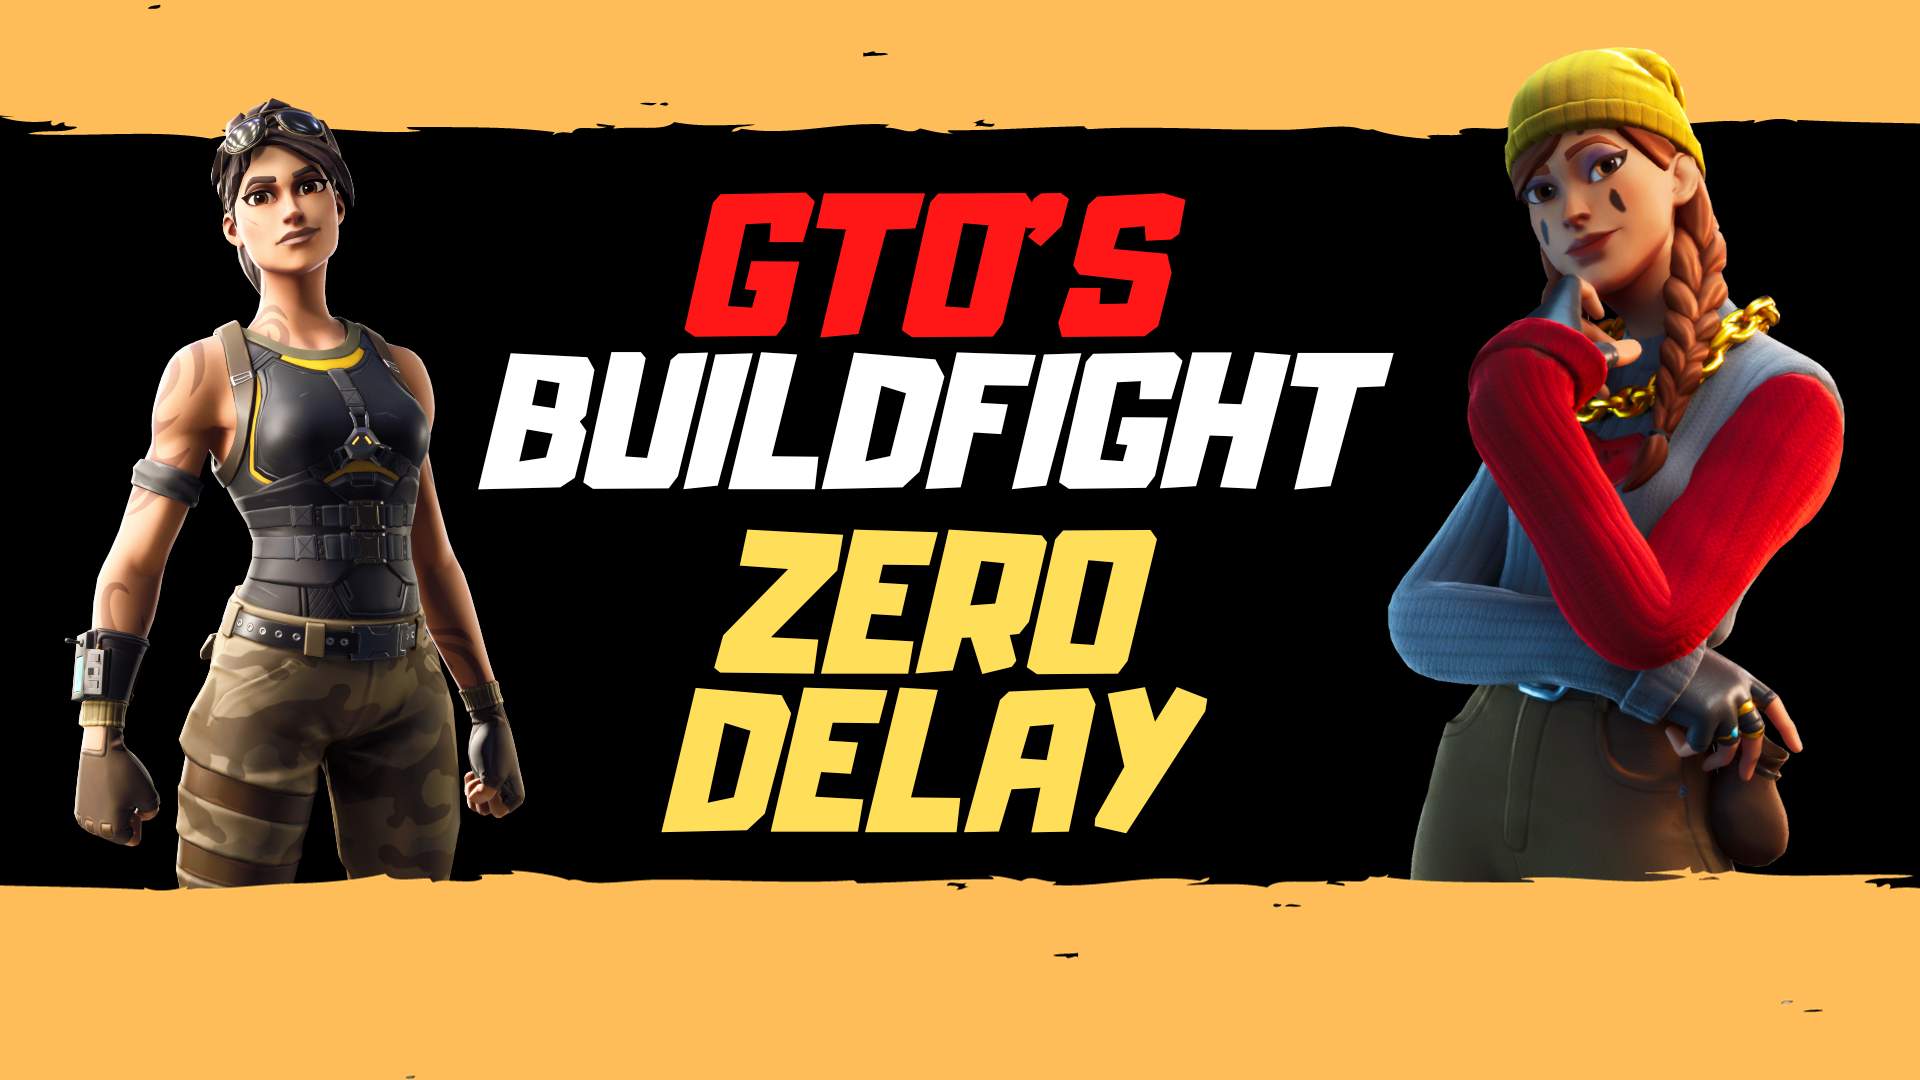 GTOS Buildfight